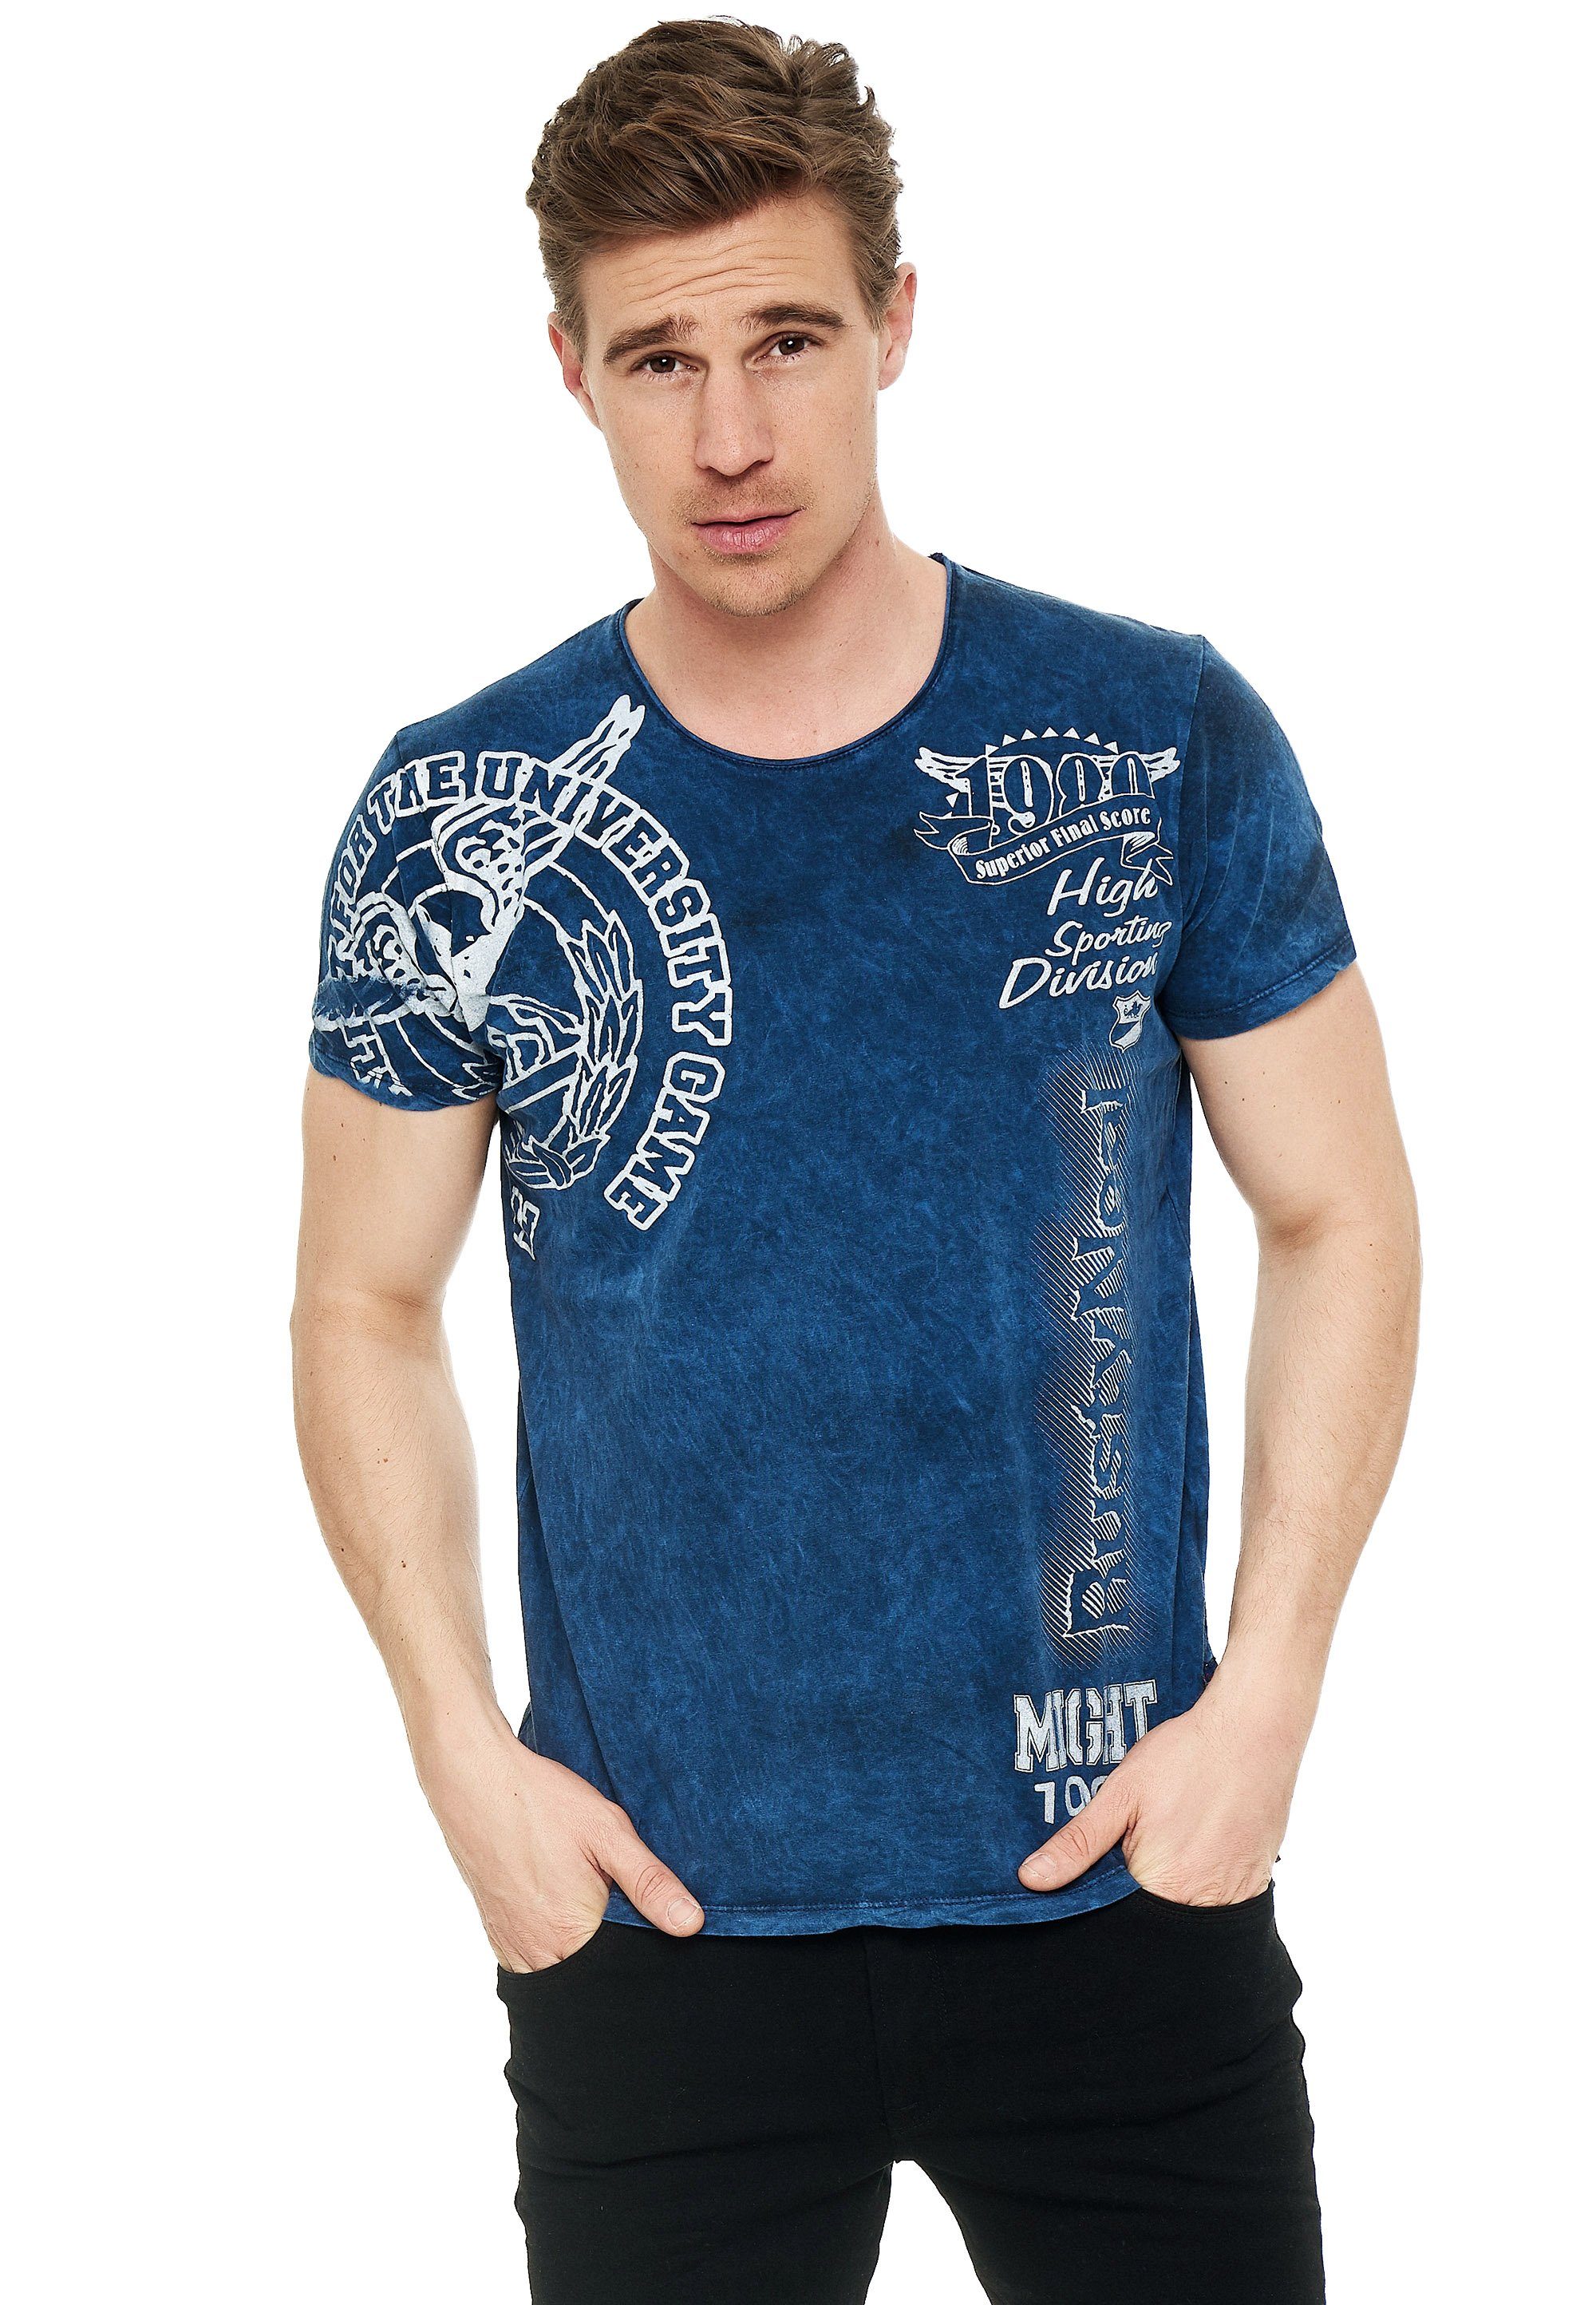 Rusty Neal T-Shirt mit eindrucksvollem Print, Feinstes Baumwollmaterial für  angenehmes Tragegefühl